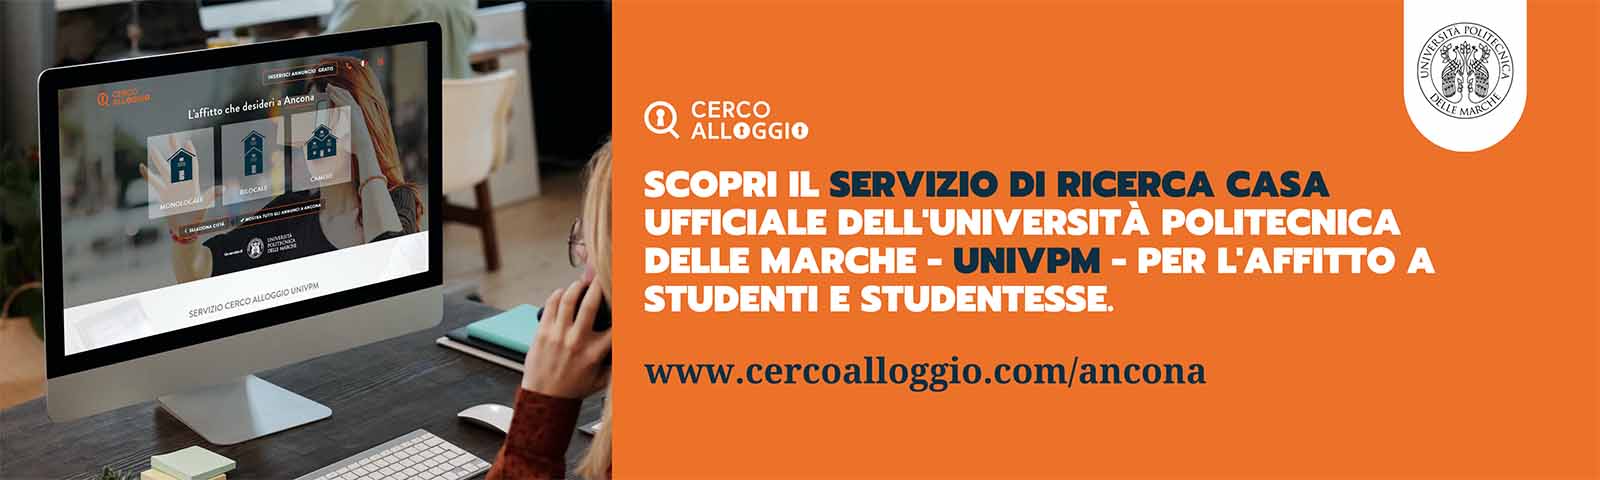 Cerco Alloggio" - Accommodation Service UnivPM